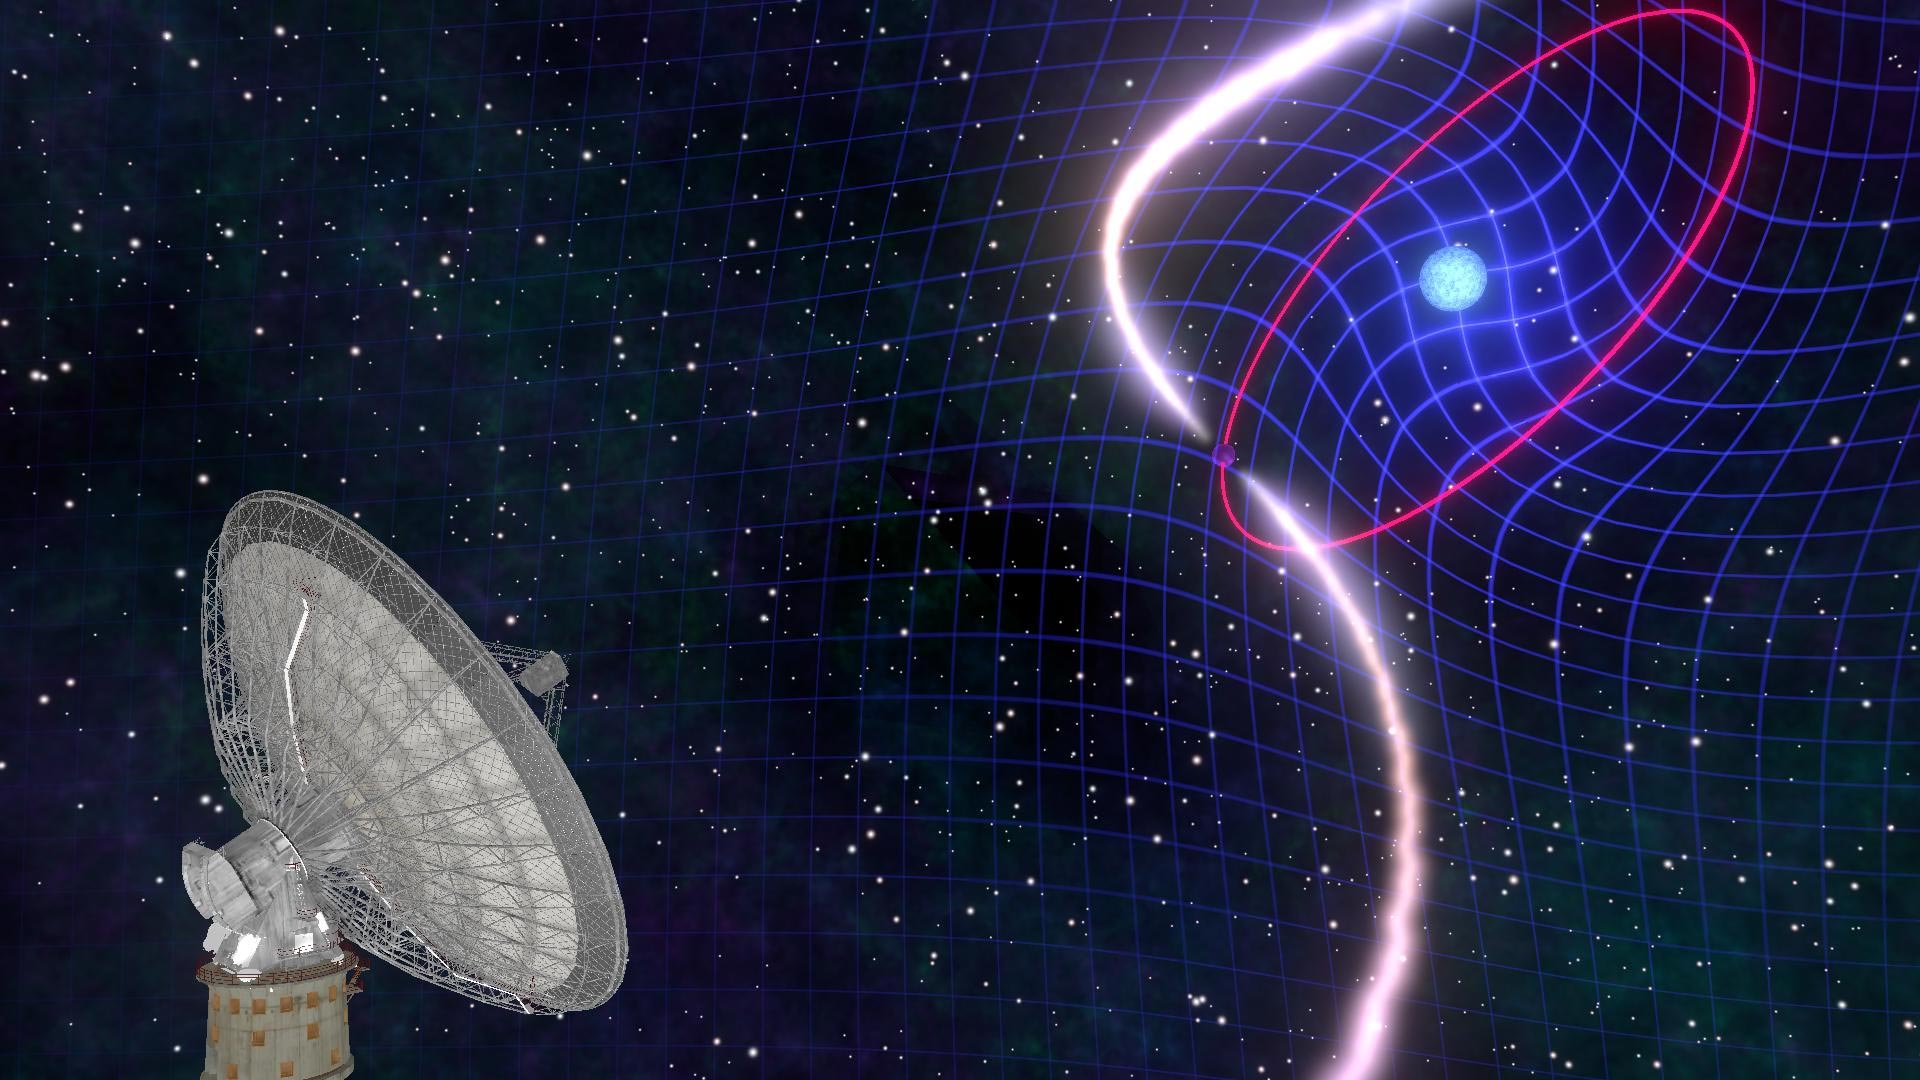 Creación artística del sistema binario PSR J1141-6545. El púlsar orbita a su enana blanca cada 4.8 horas. La rotación rápida de la enana blanca arrastra el espacio-tiempo a su alrededor, haciendo que toda la órbita cambie su orientación. Crédito: ©Mark Myers/ARC Centre of Excellence for Gravitational Wave Discovery (OzGrav), Australia.